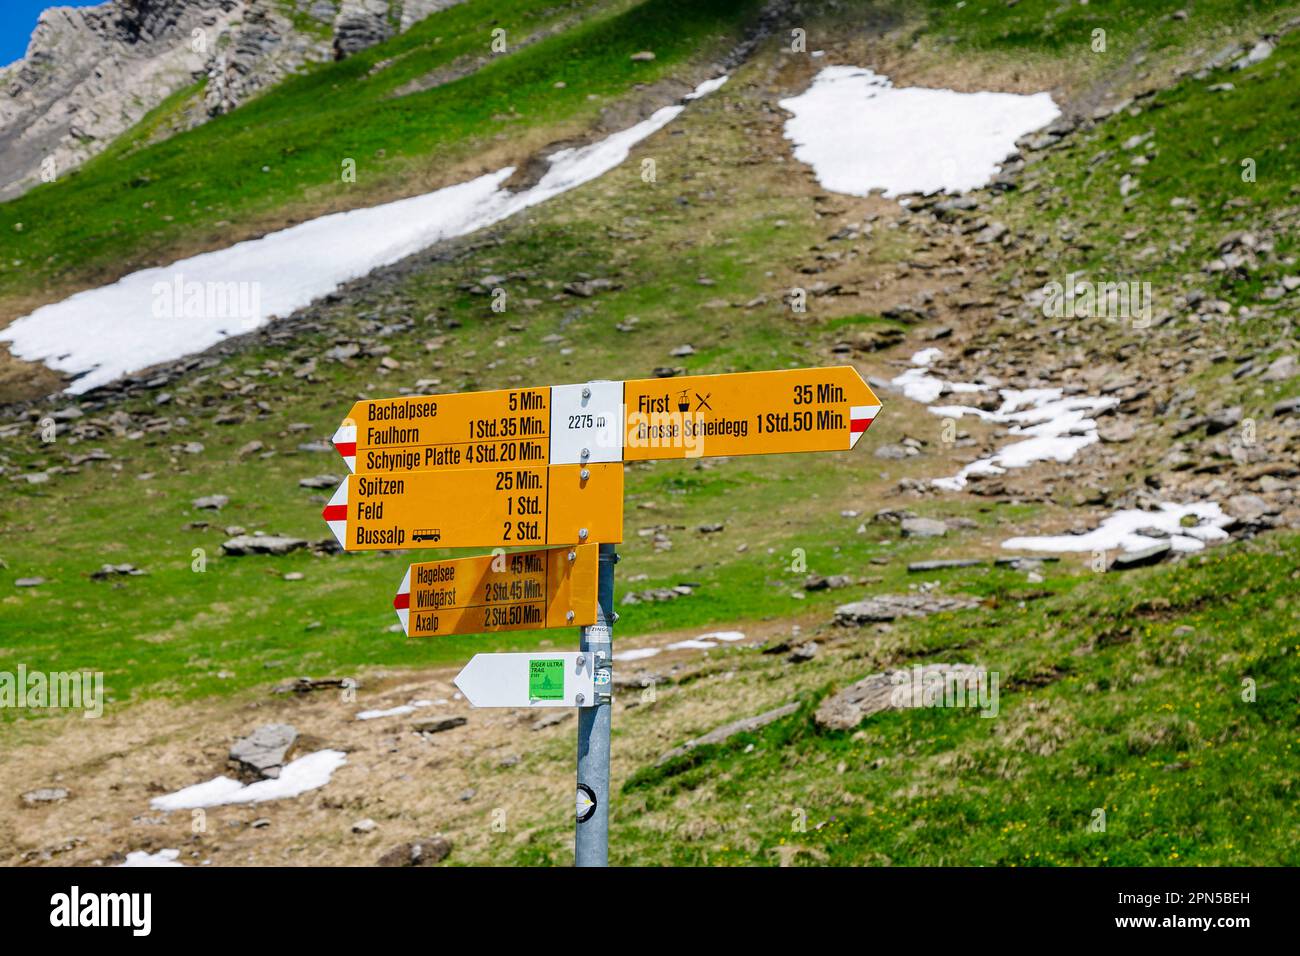 Indicazione di direzione su un sentiero escursionistico vicino a Bachalpsee e Grindelwald-First nella regione Jungfrau delle Alpi bernesi dell'Oberland, Svizzera Foto Stock